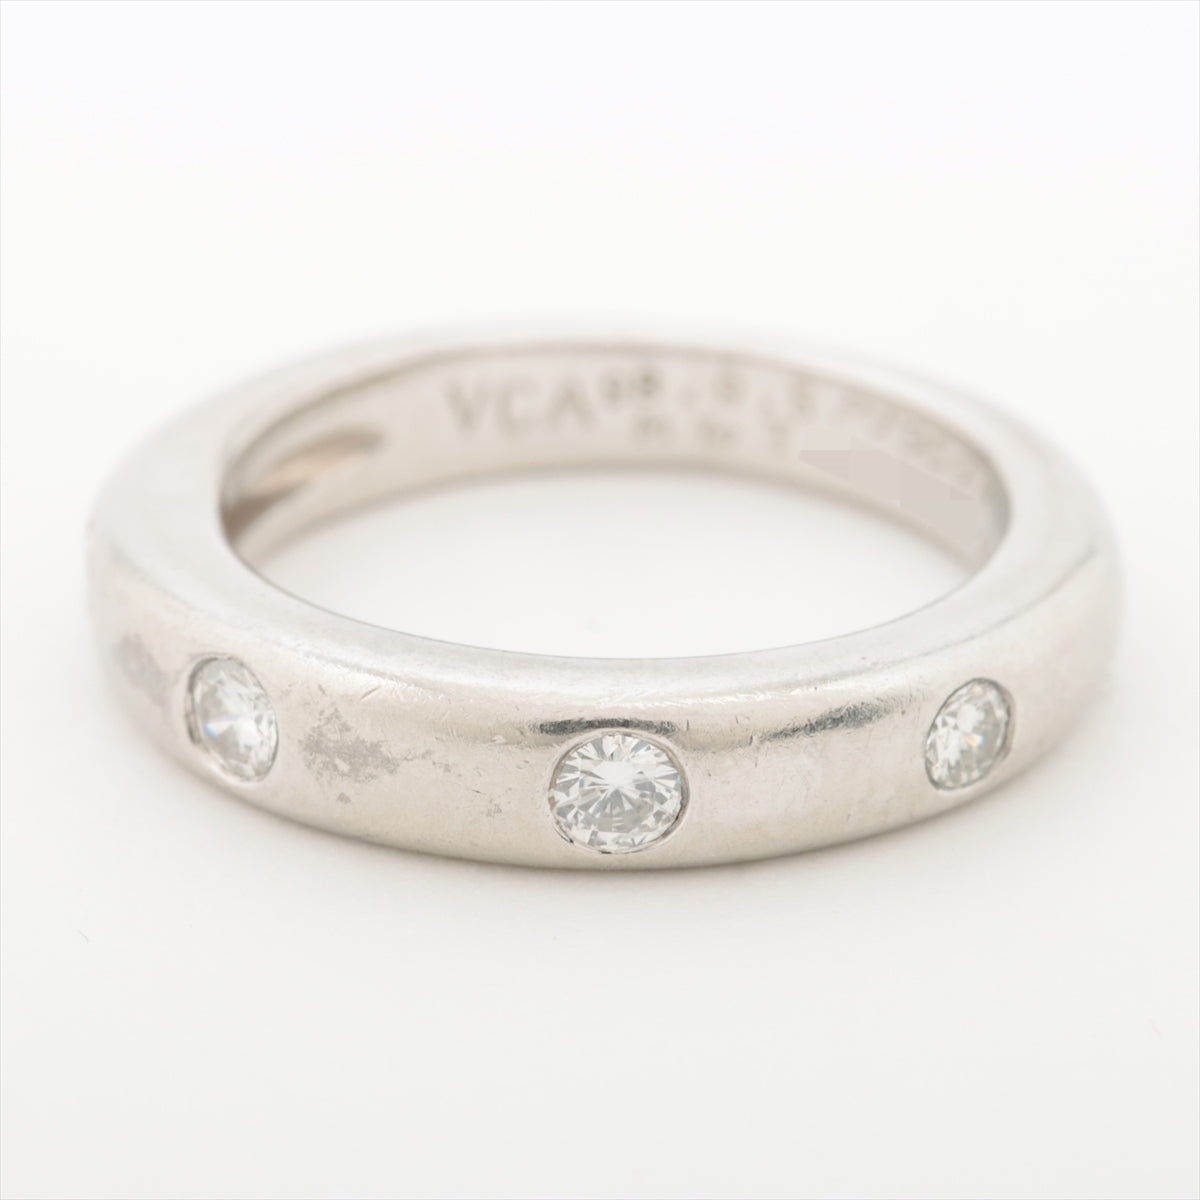 Van Cleef & Arpels New York Marriages 4P diamond rings Pt950 6.5g